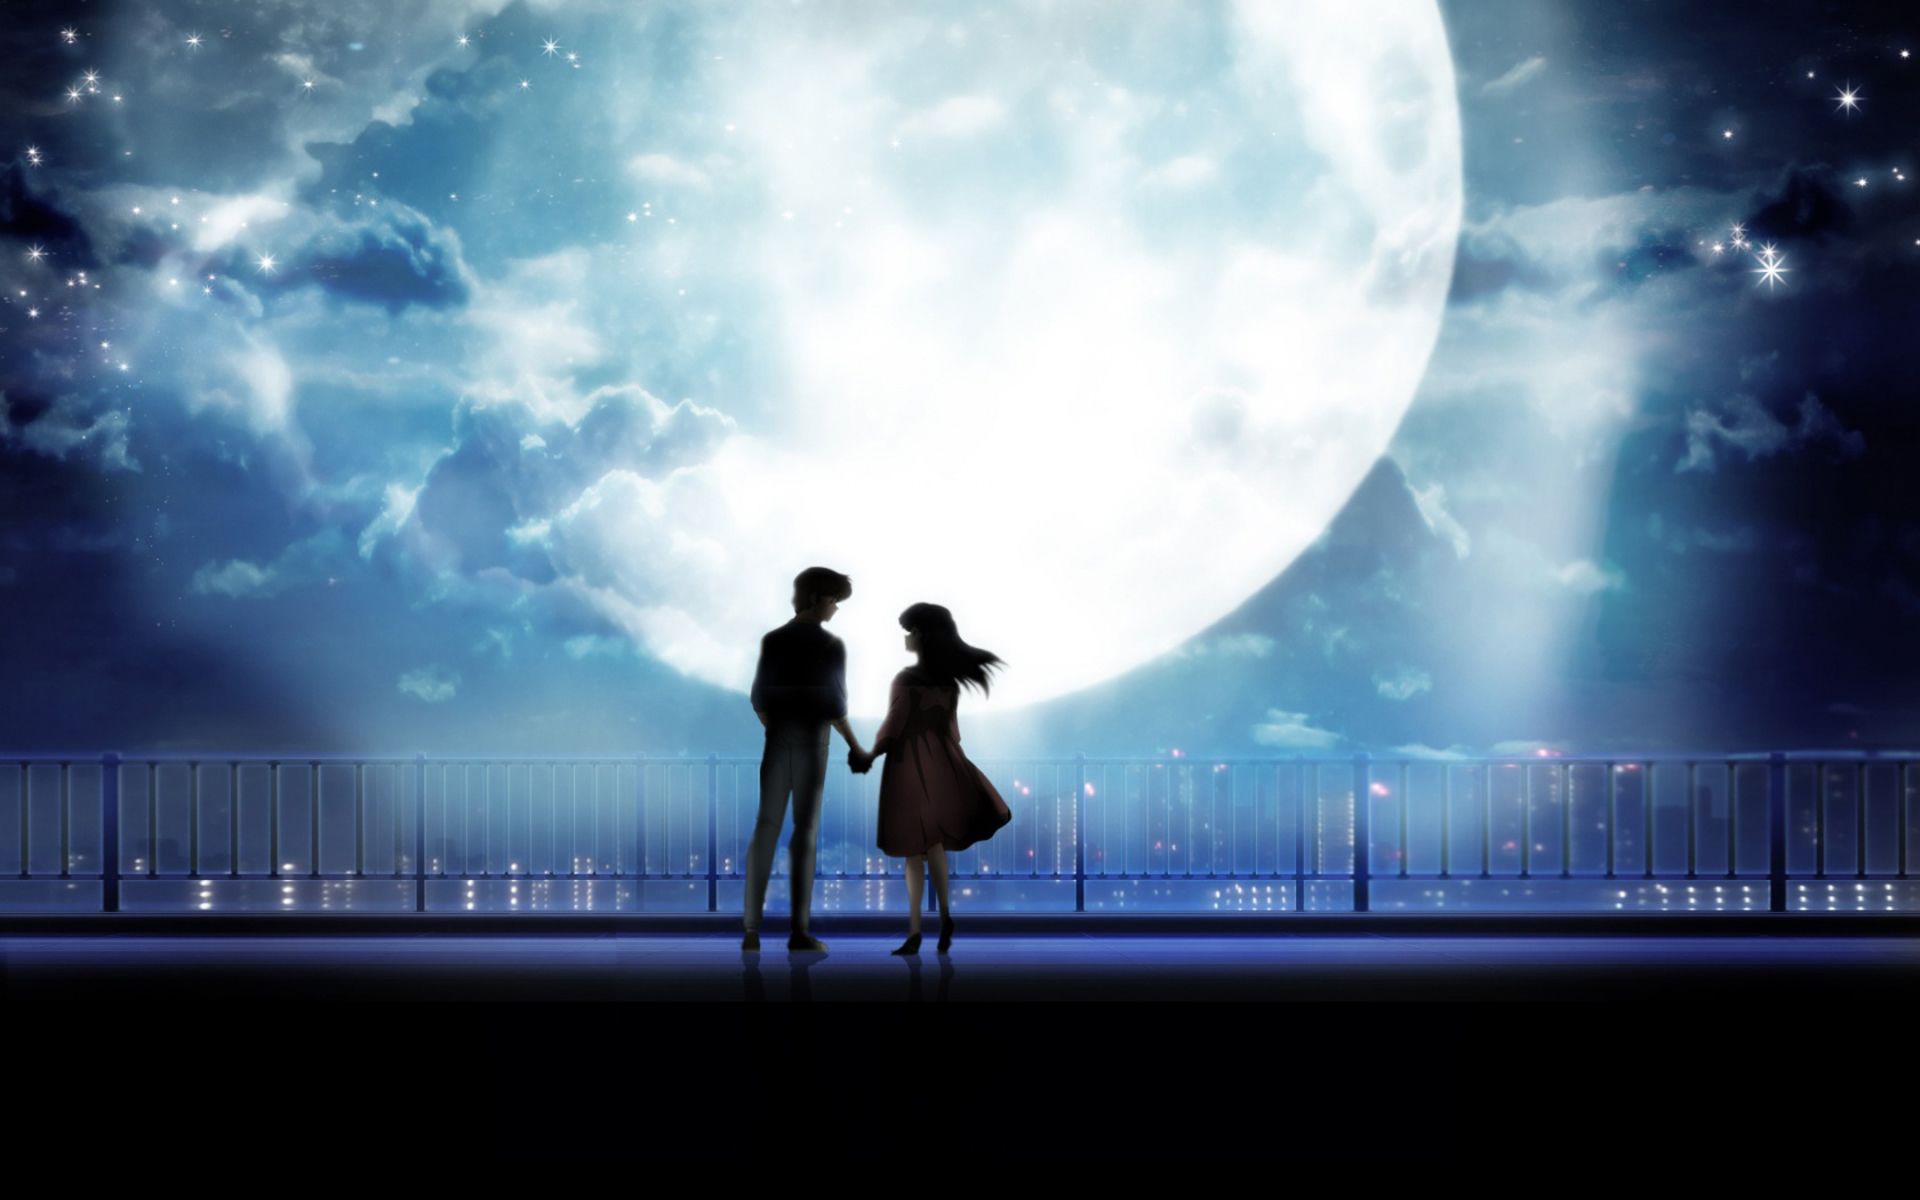 Anime Art Anime Couple Holding Hands Moonlight Desktop, Wallpaper13.com